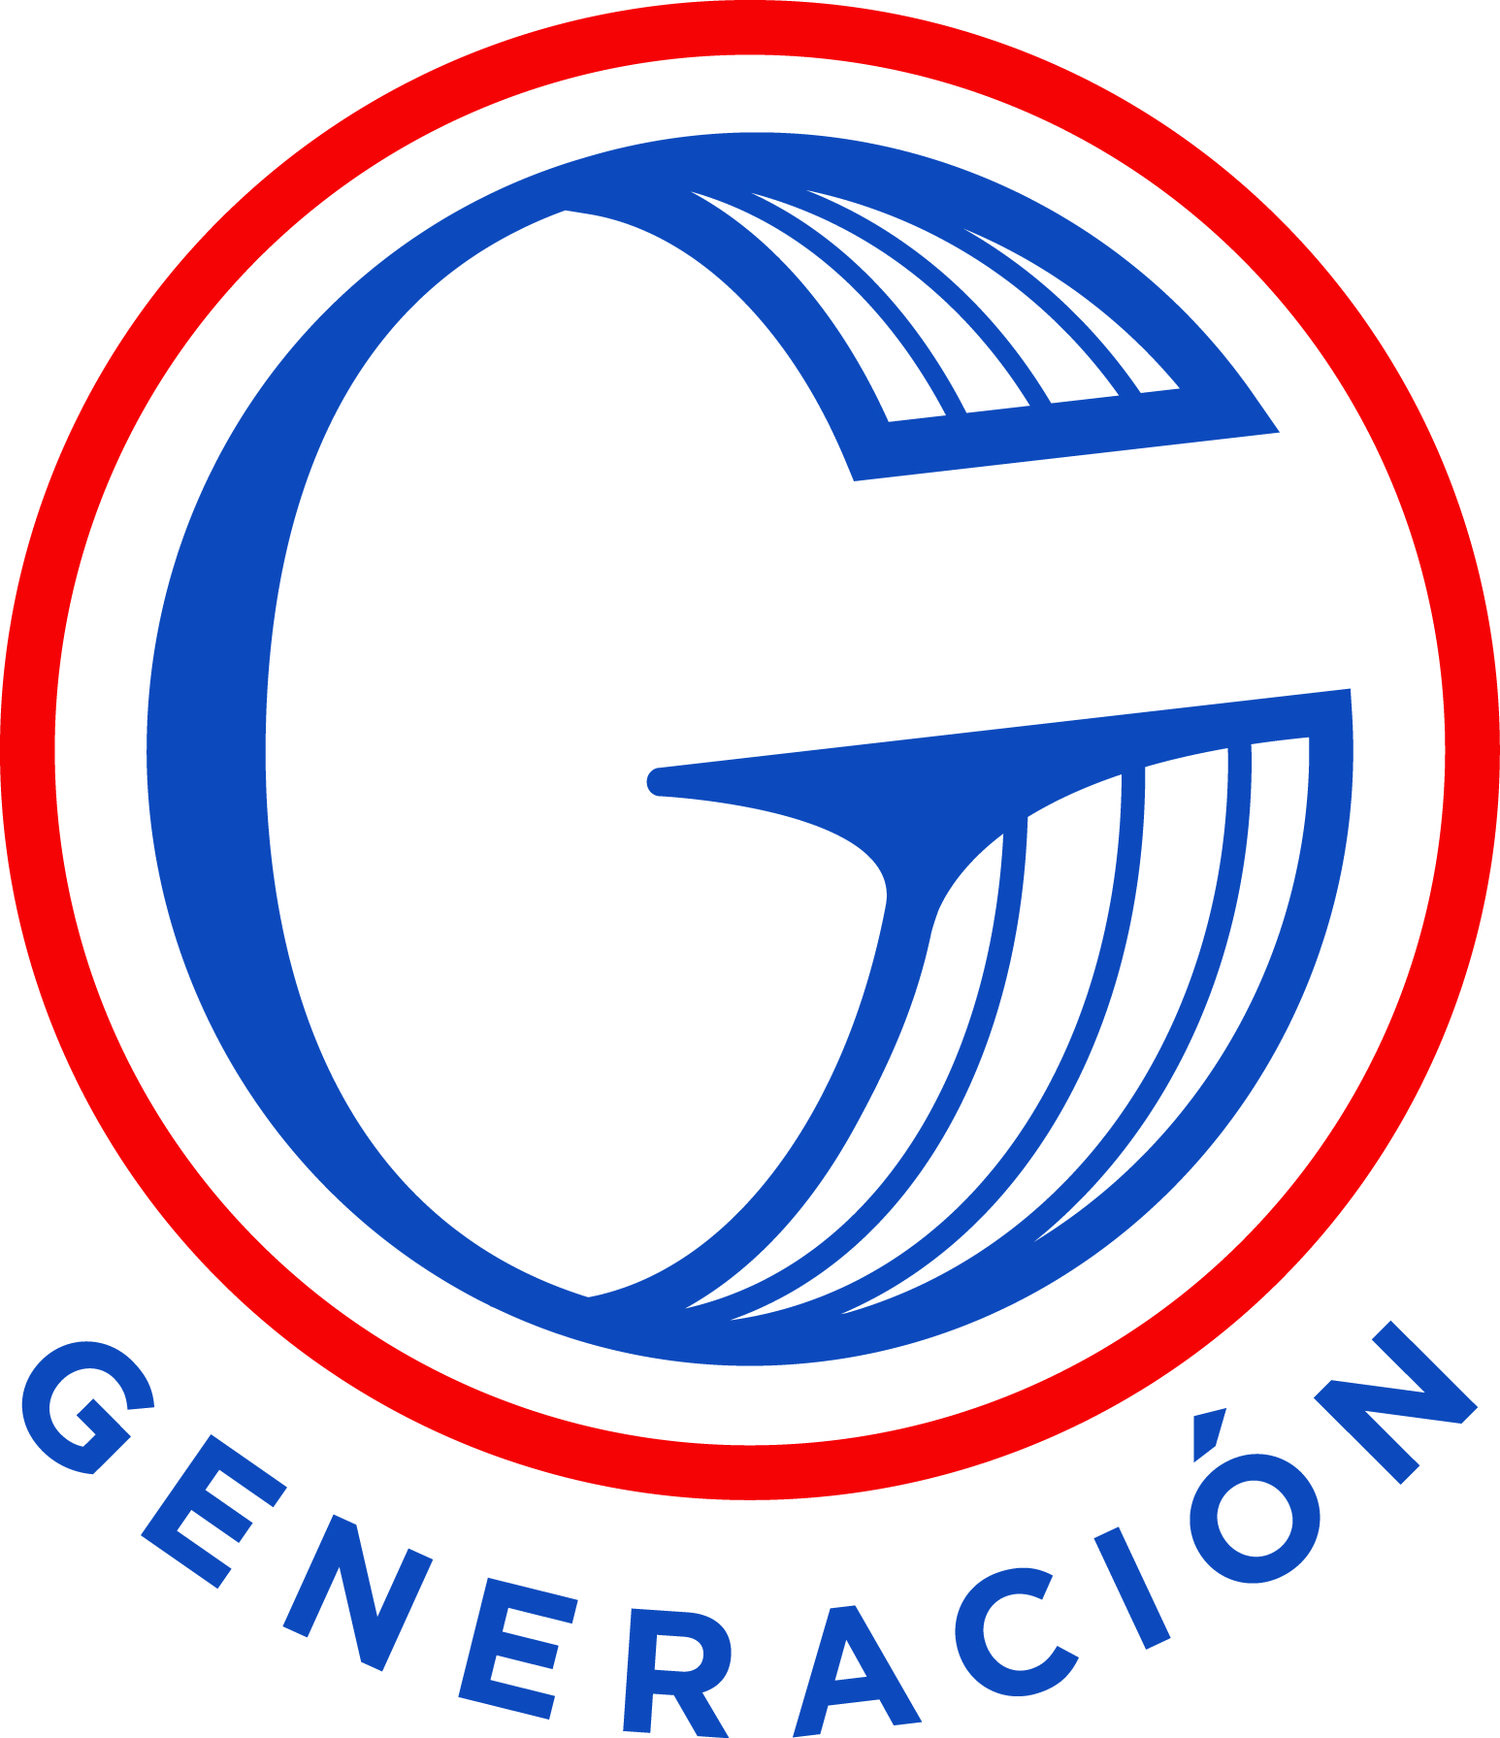 Friends of Casa Generacion